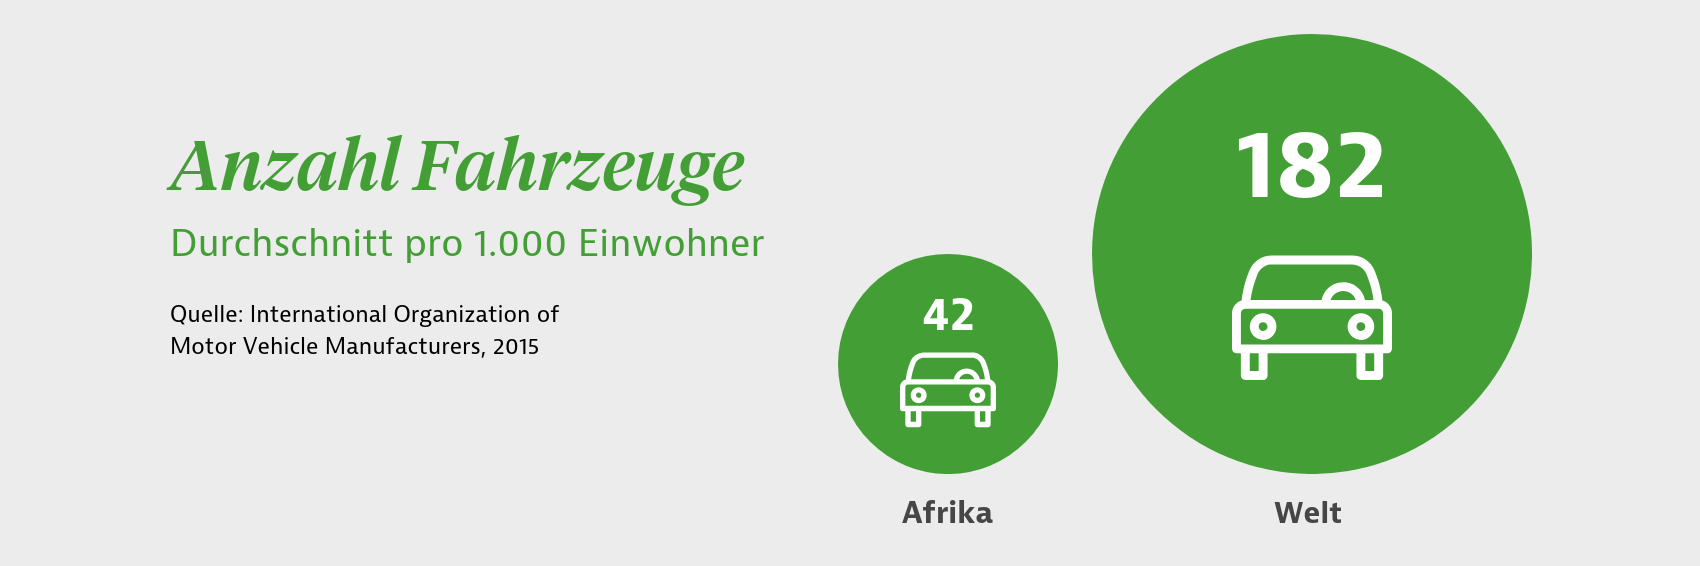 Durchschnittliche Anzahl von Fahrzeugen pro 1.000 Einwohner in Afrika und weltweit